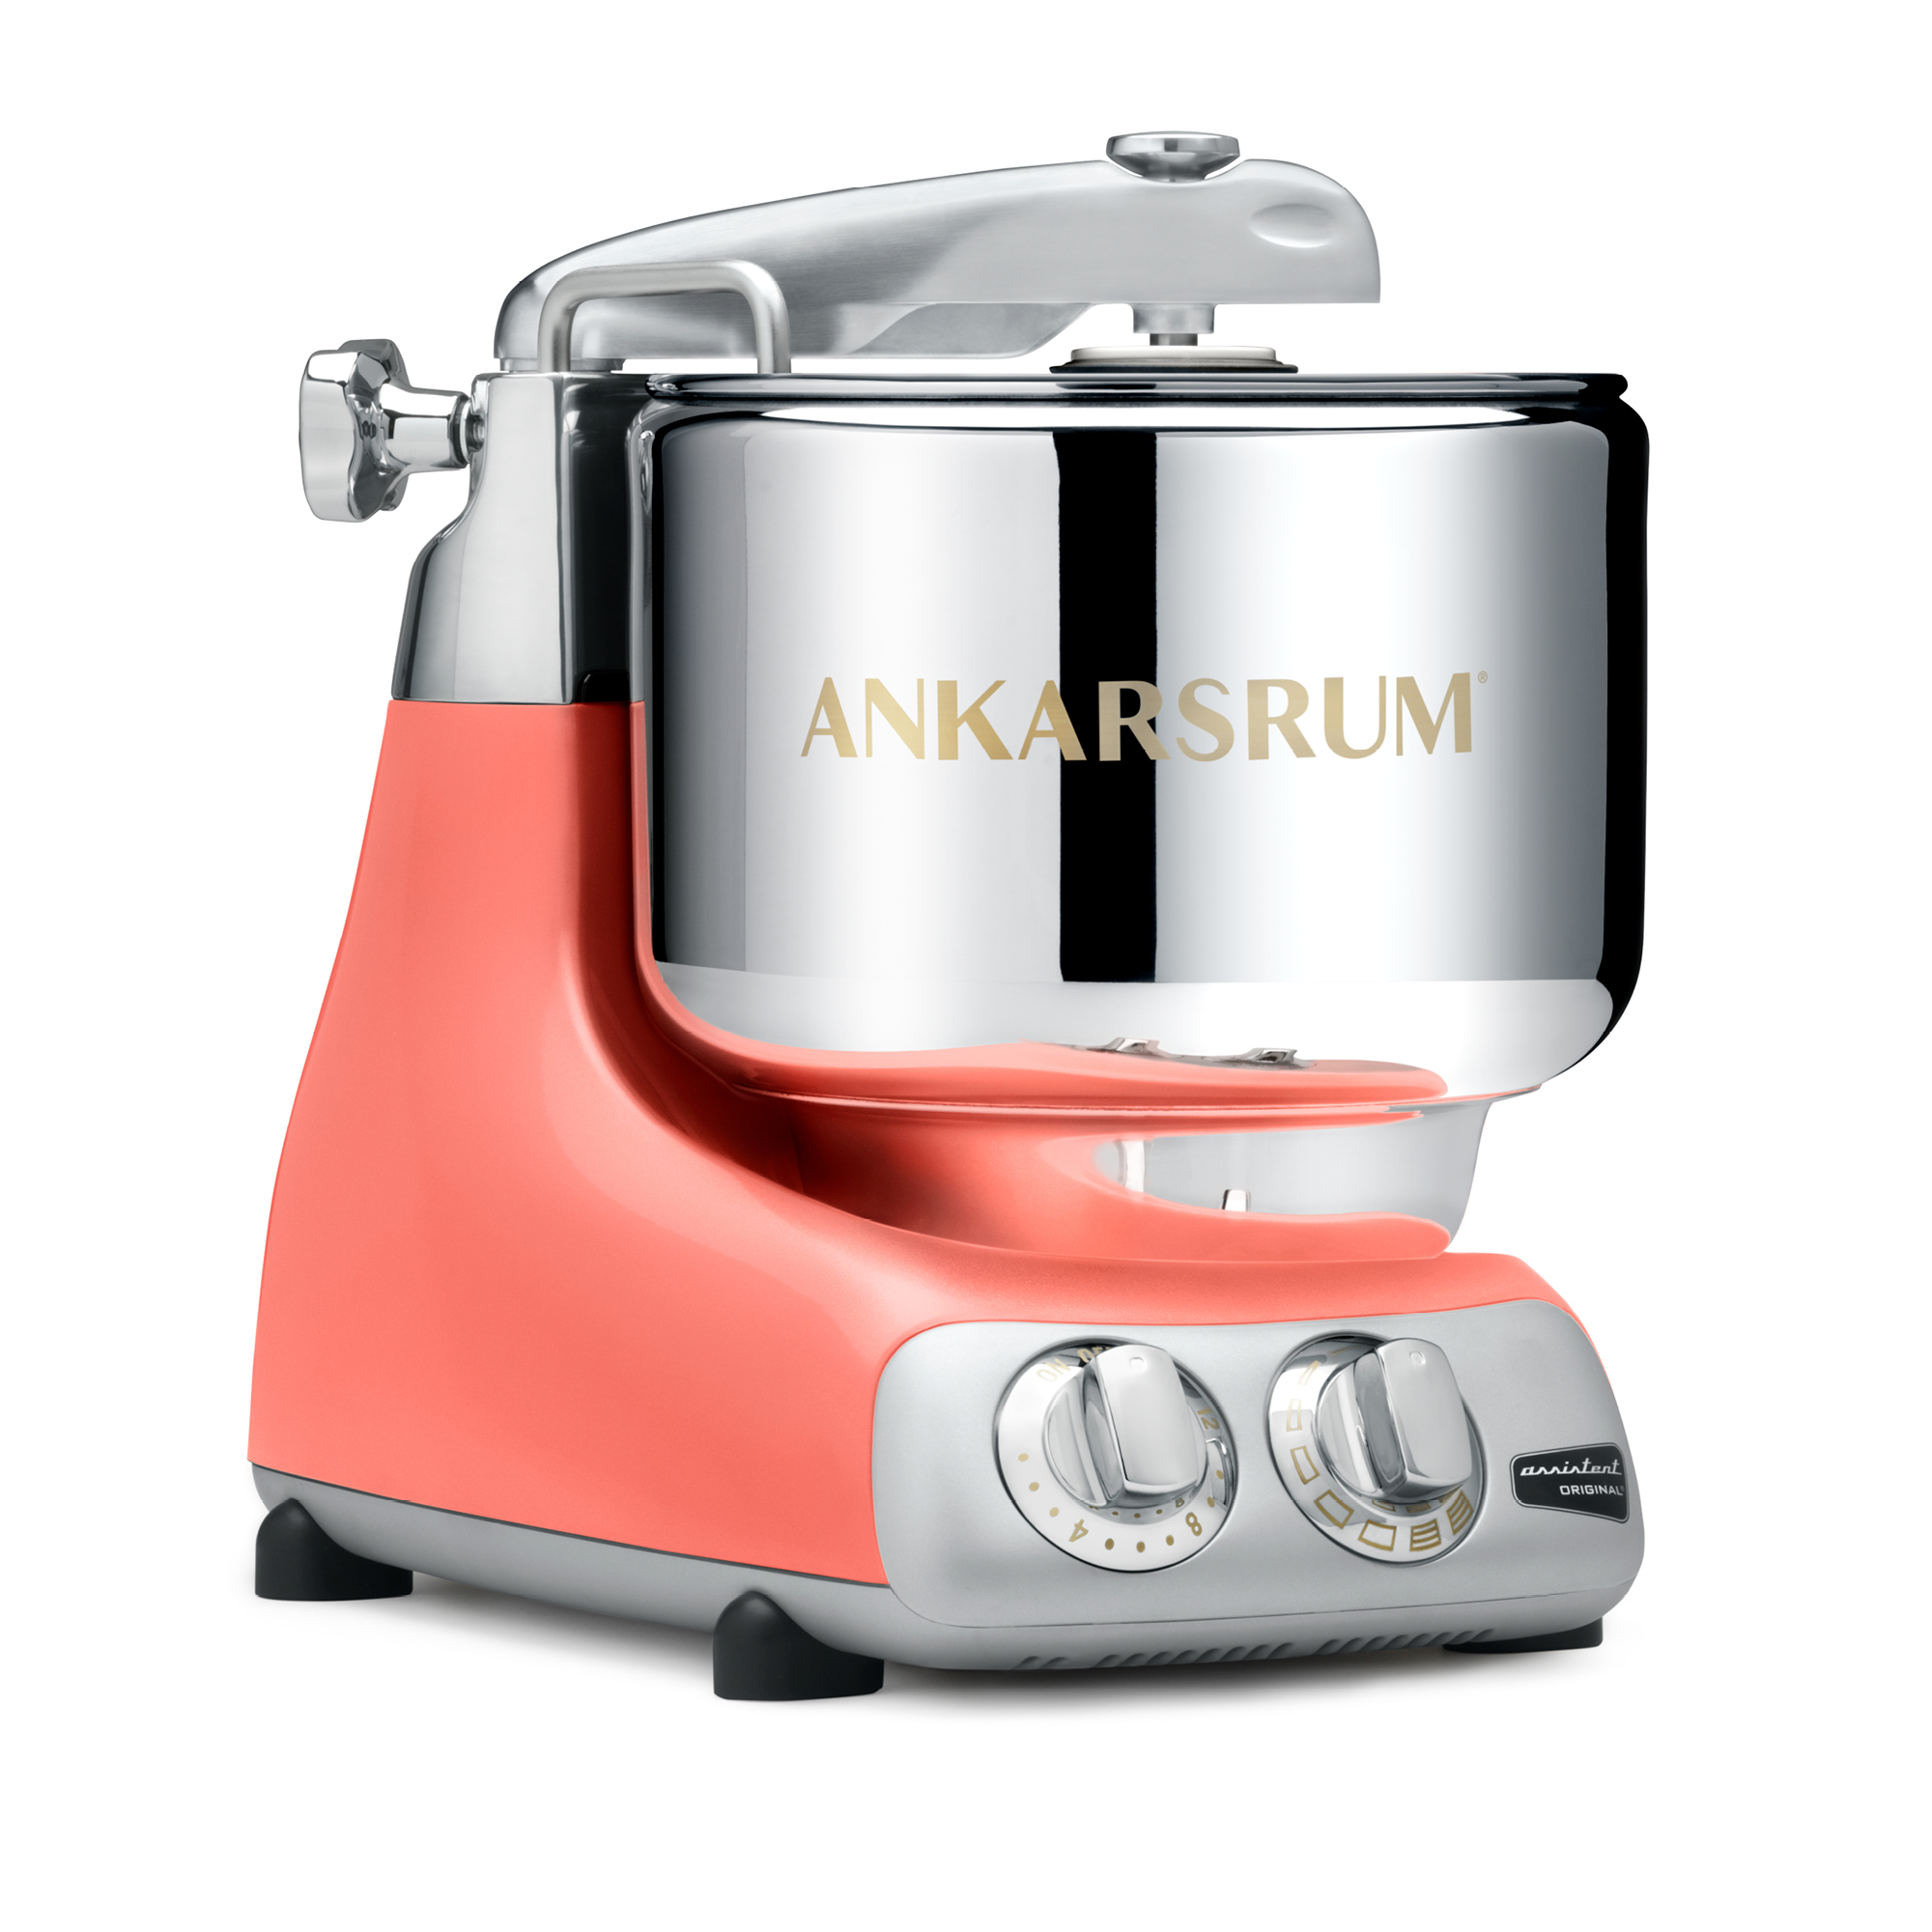 Visuel deRobot pâtissier Ankarsrum Assistent  - Nouveau Coloris - CORAL CRUSH Robot pâtissier multifonction - pétrin